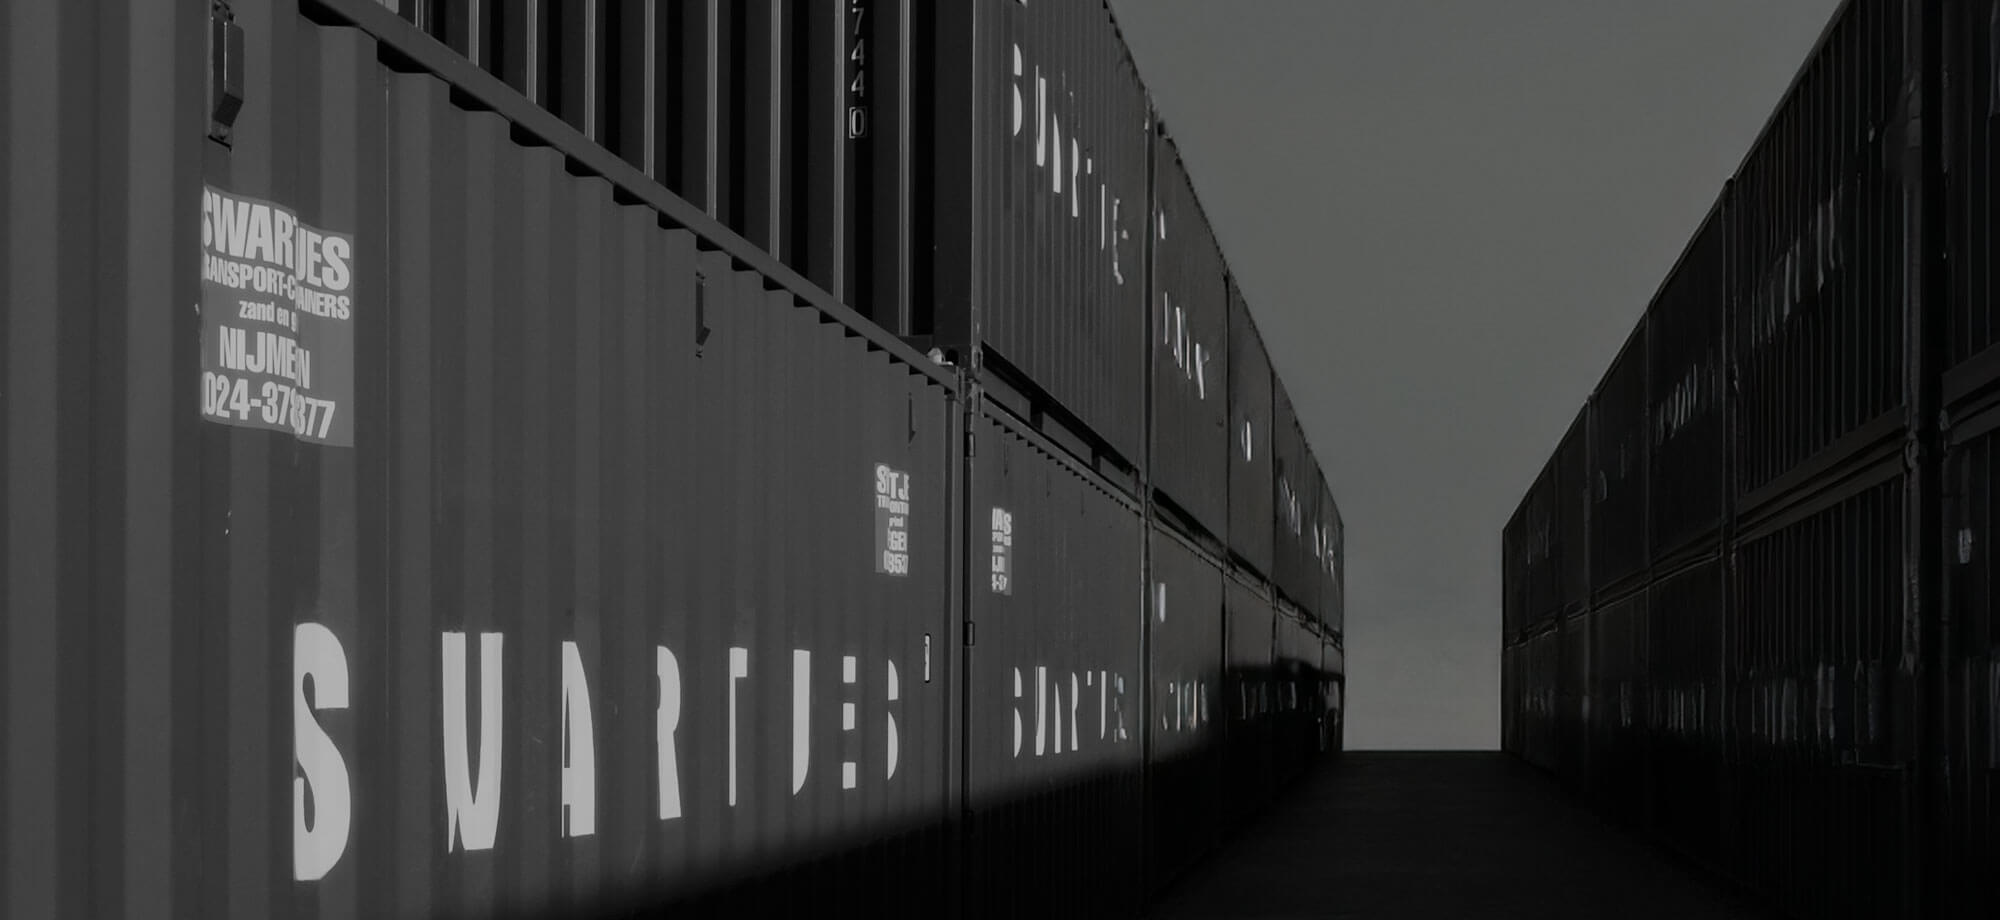 Opslagcontainer huren bij Swartjes Transport